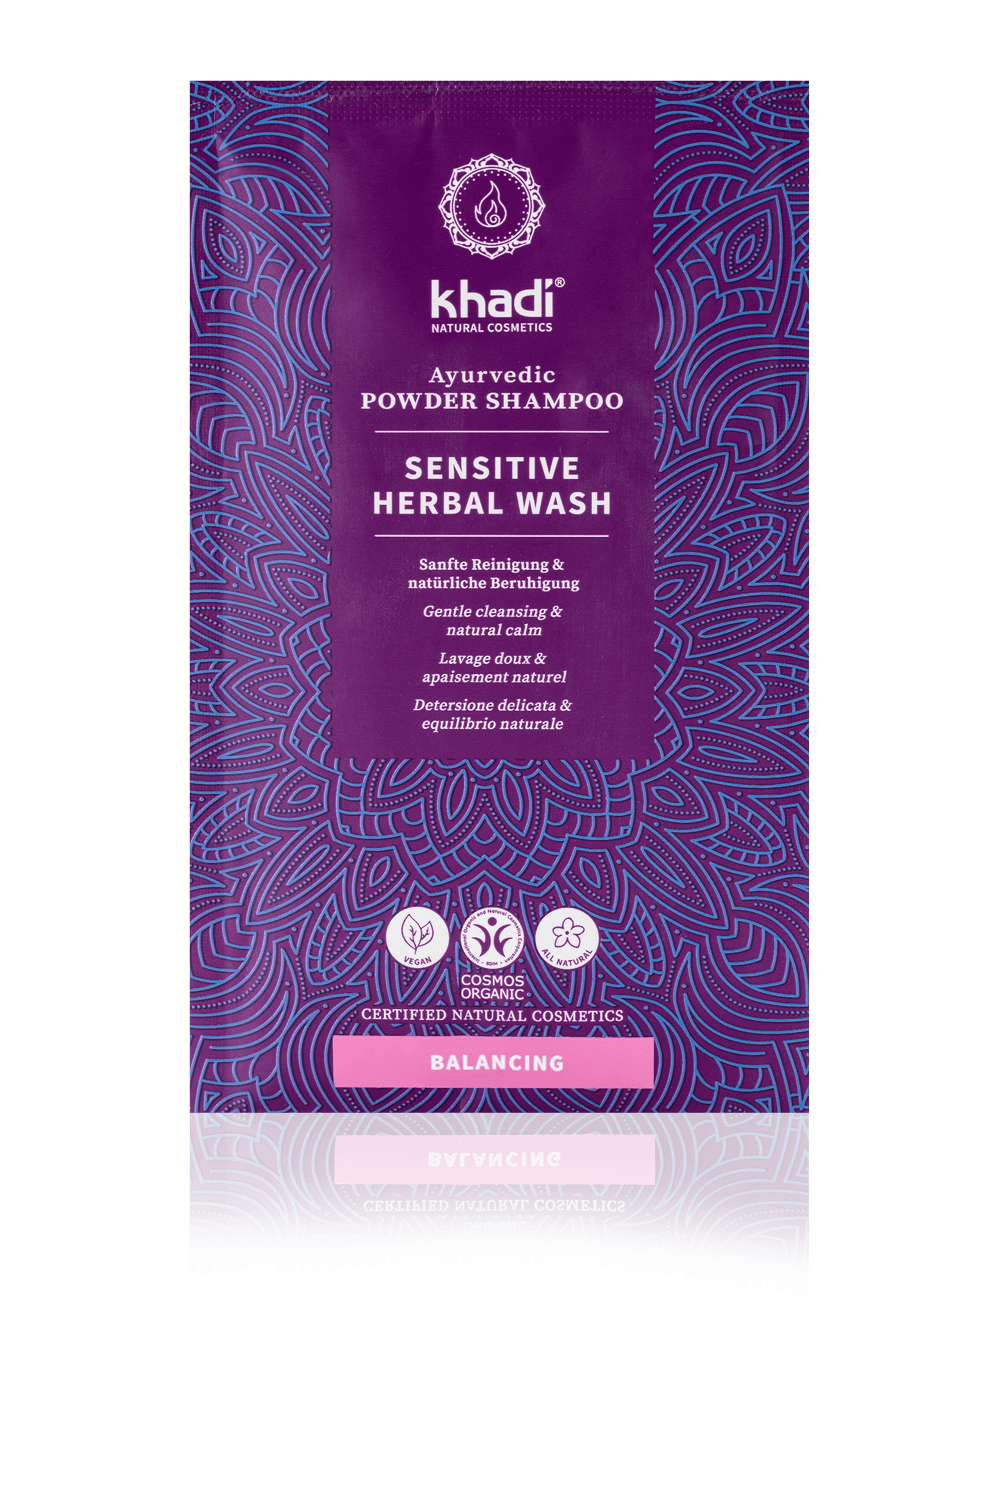 Khadi Natural Products Sensitive Herbal Wash Powder Shampoo, 50g - firstorganicbaby